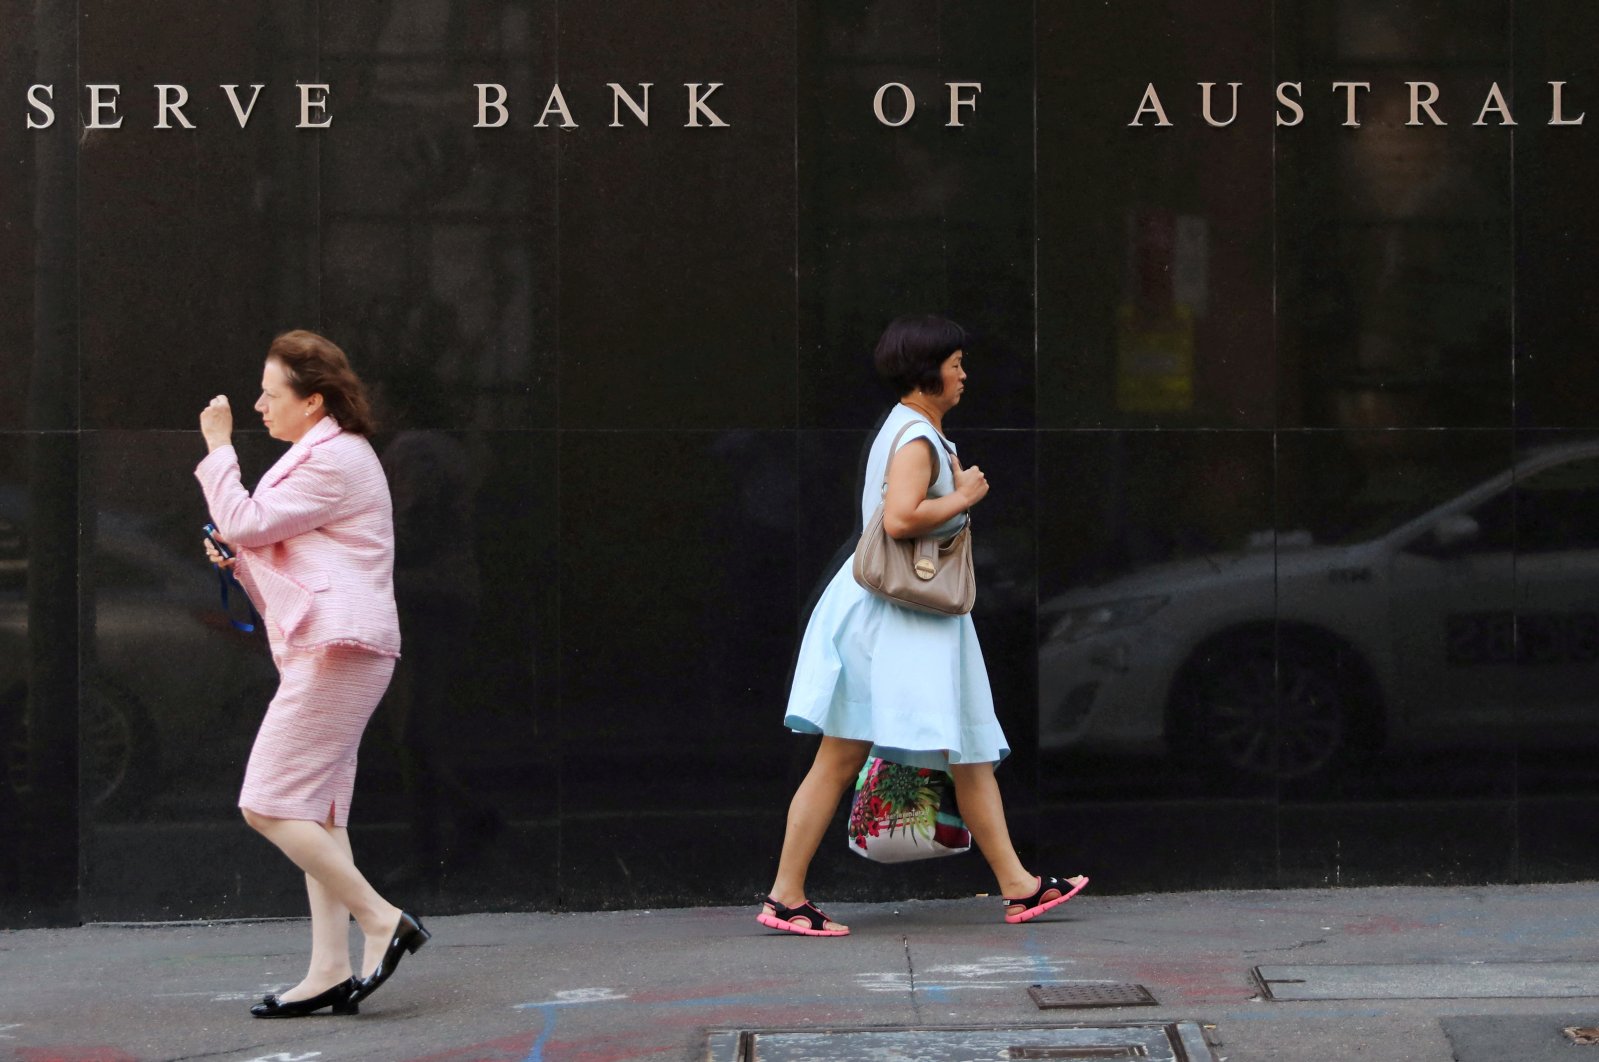 Bank sentral Australia mempertahankan suku bunga acuan di 4,1%